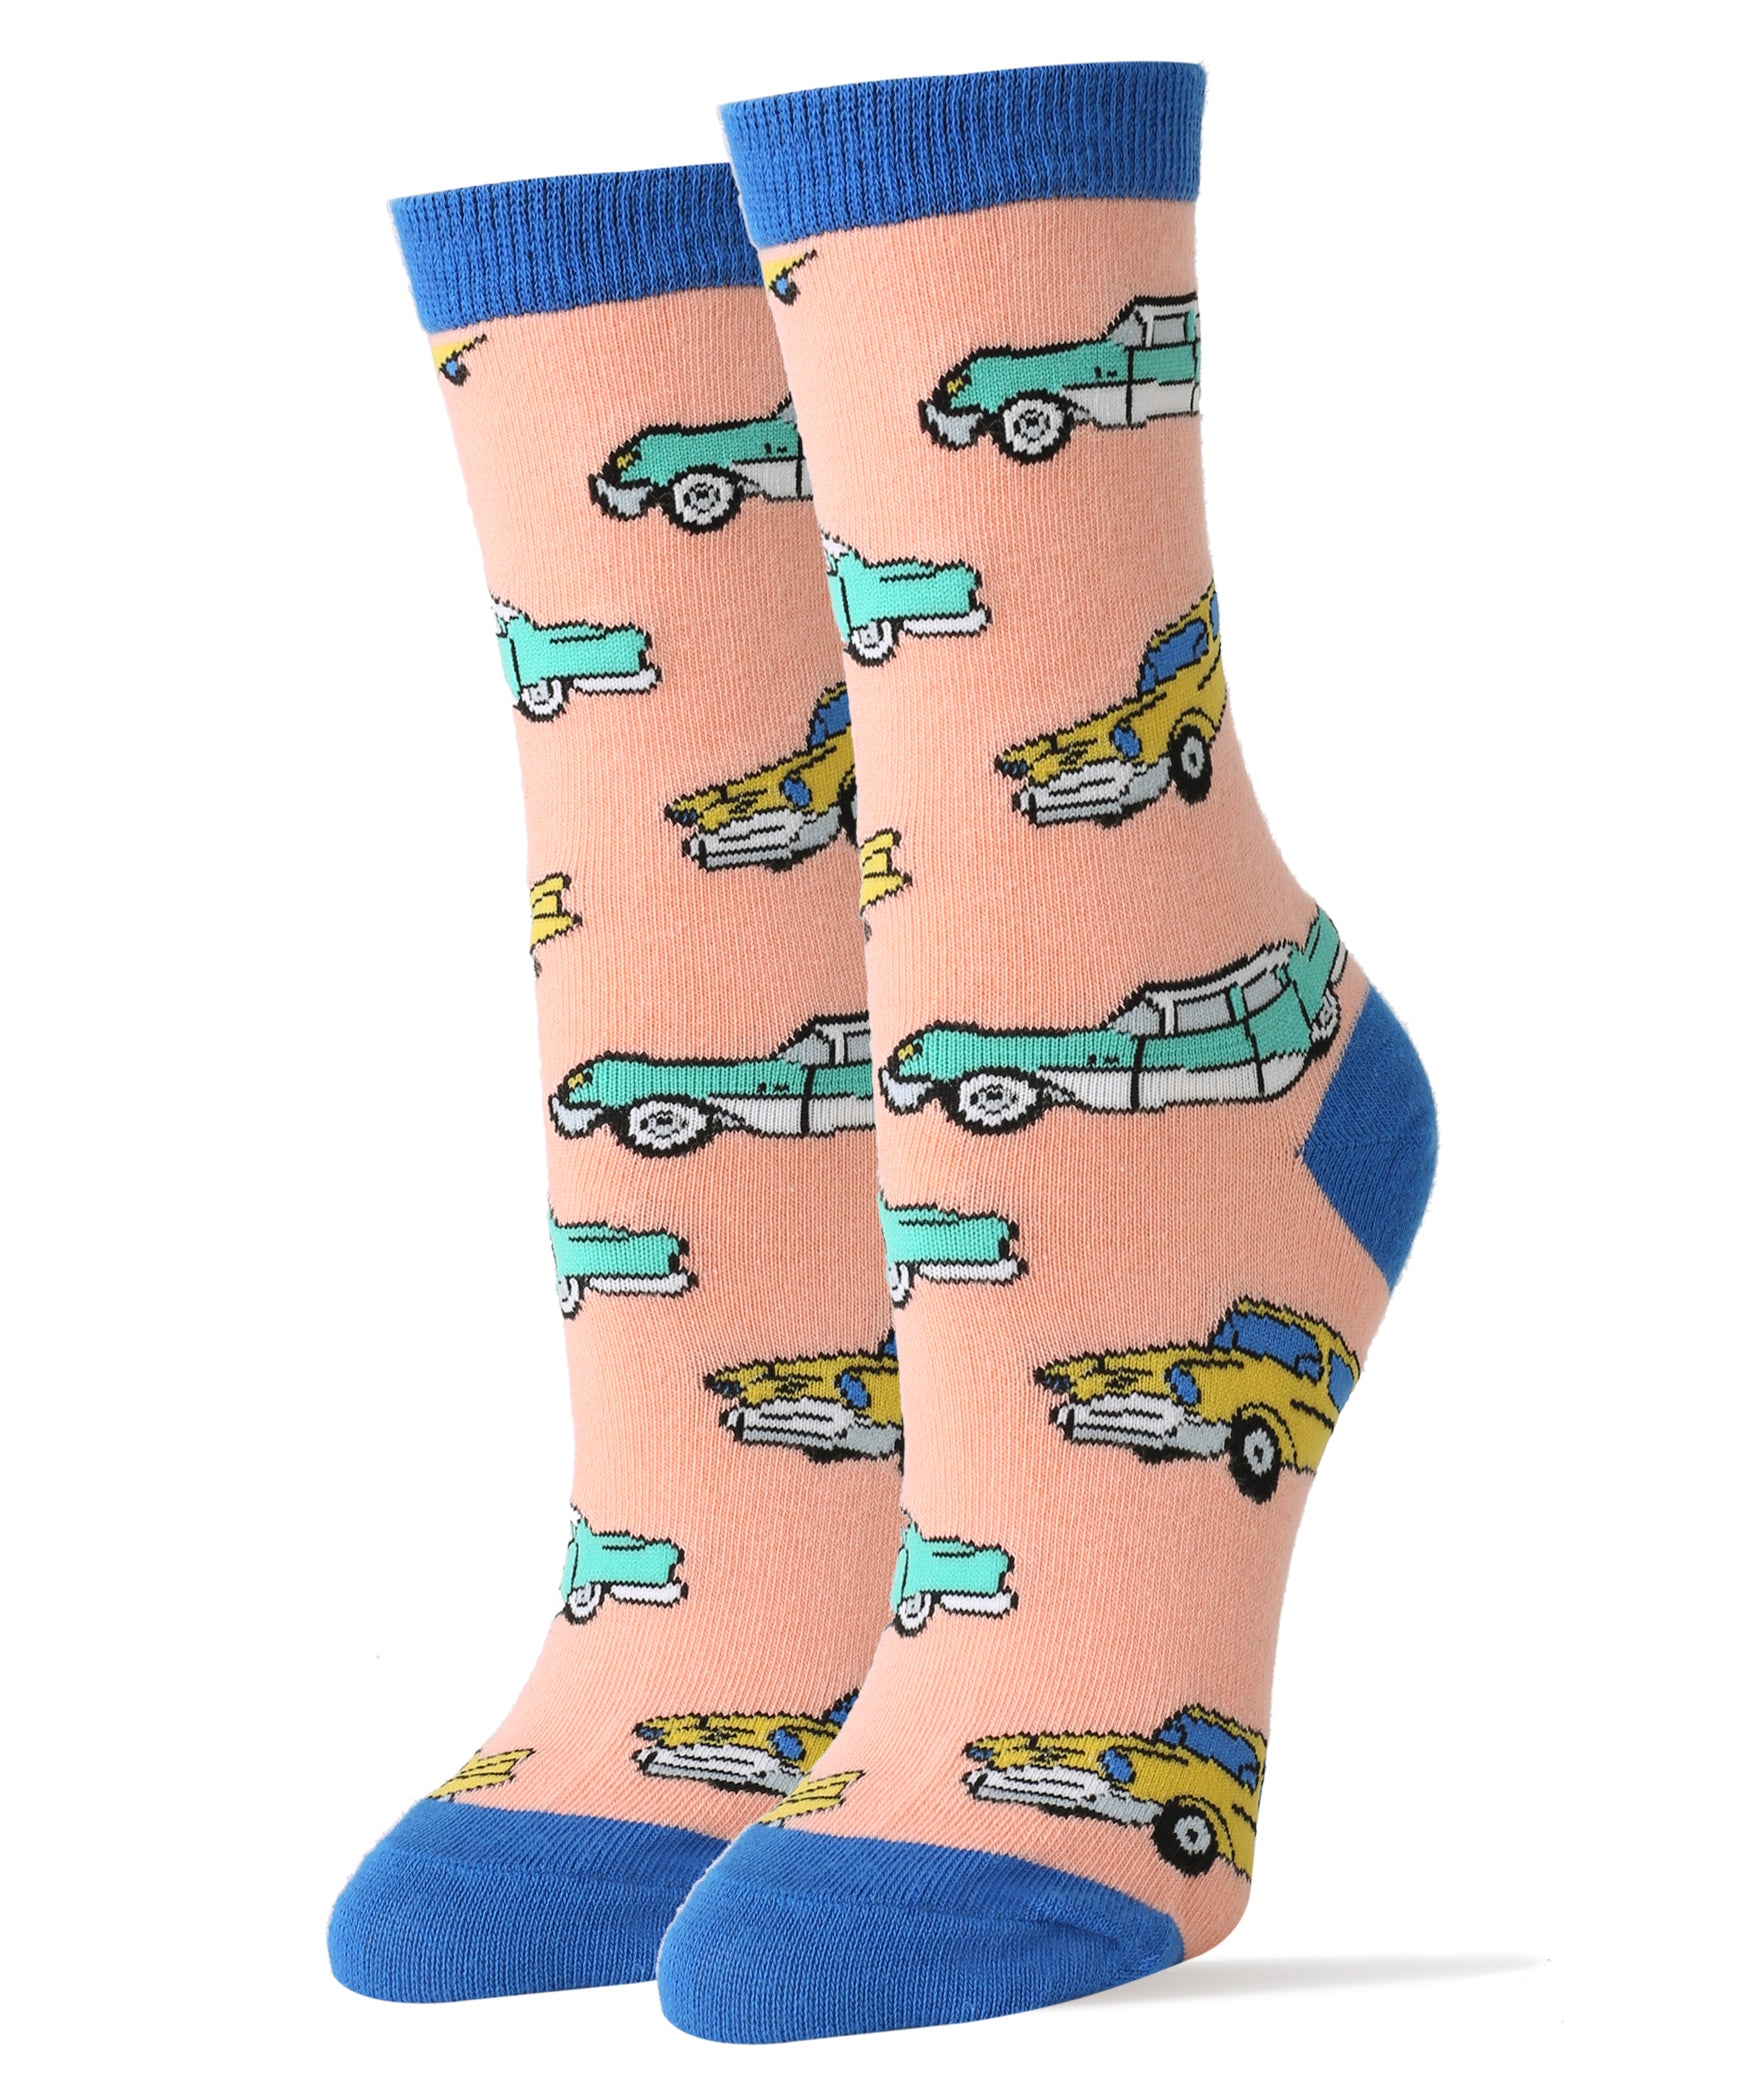 Wheels Socks | Novelty Crew Socks For Women